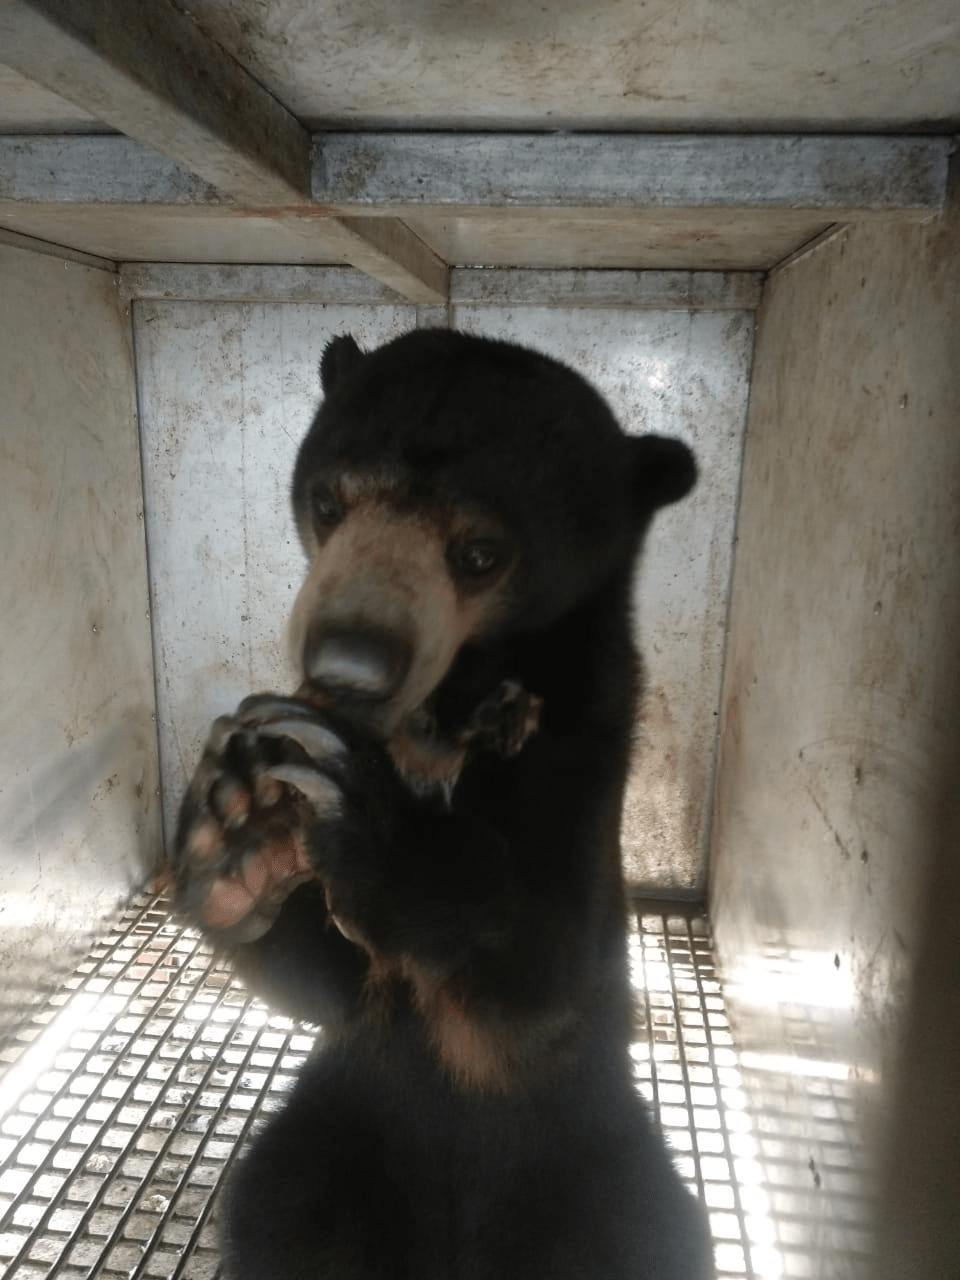 Beruang madu yang akan dilepasliarlan di areal PT MRU. | Foto: PPID KLHK